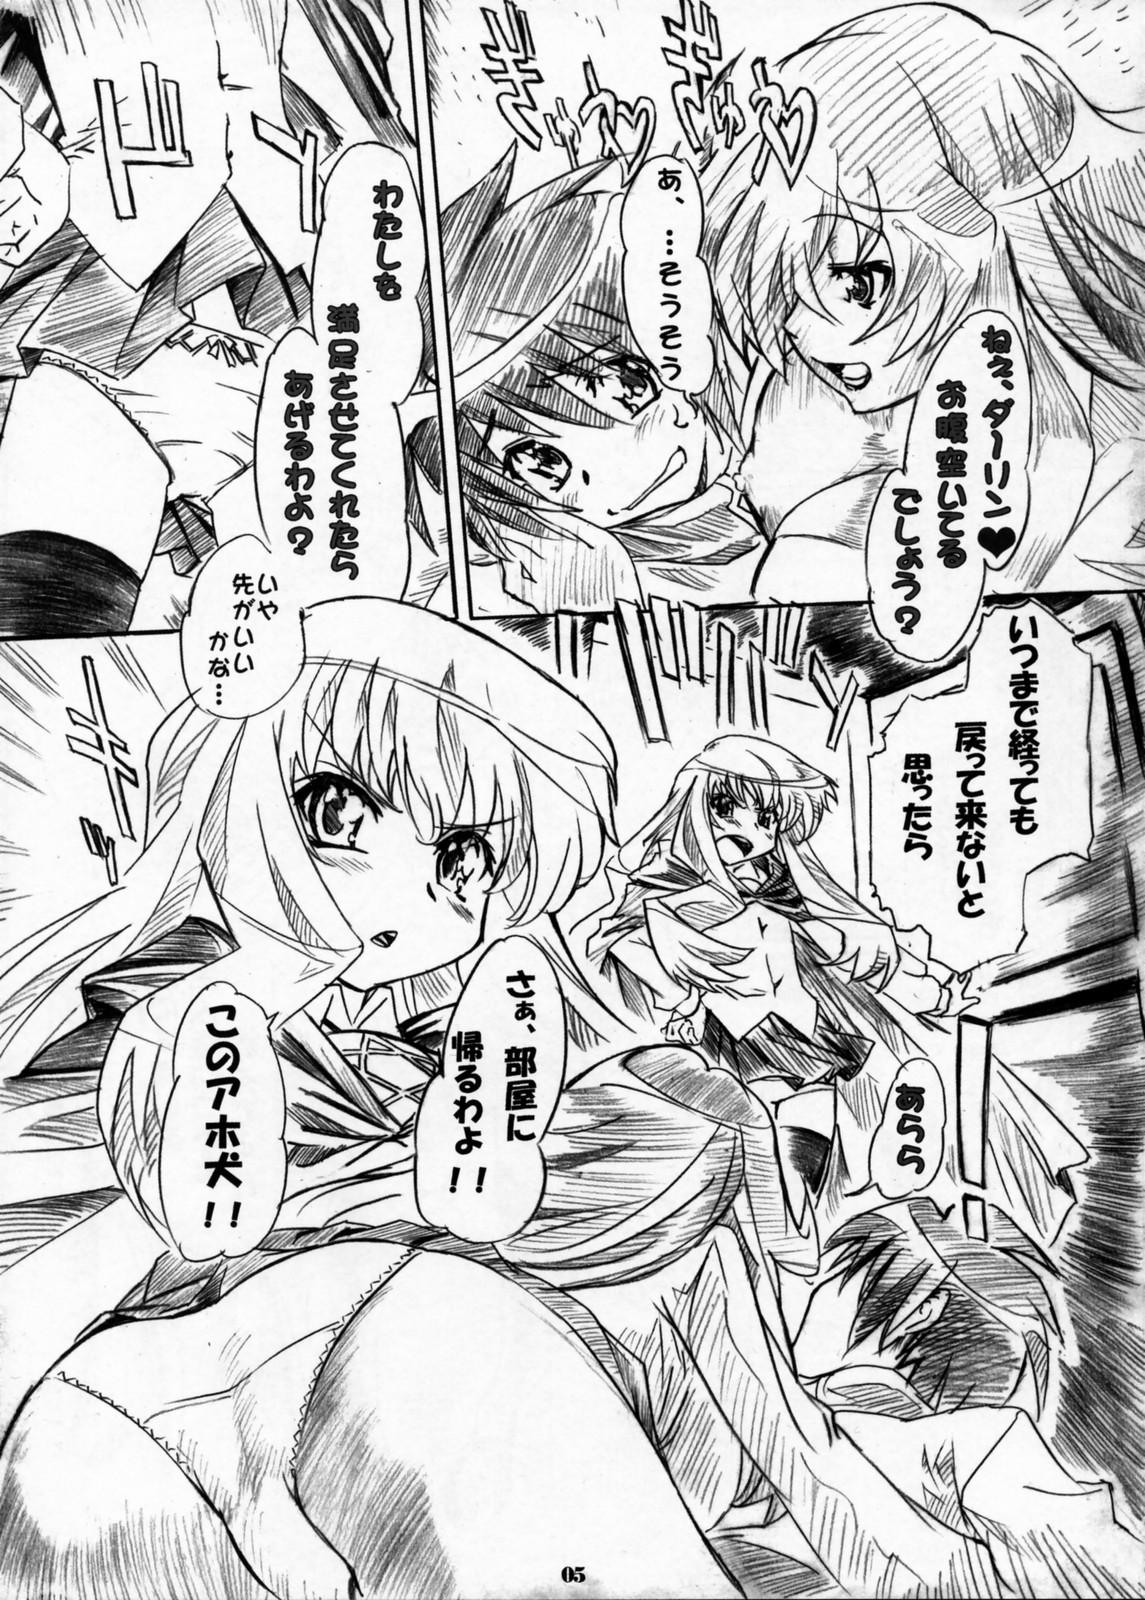 Ano Kizoku Gokuraku - Zero no tsukaima Puta - Page 4